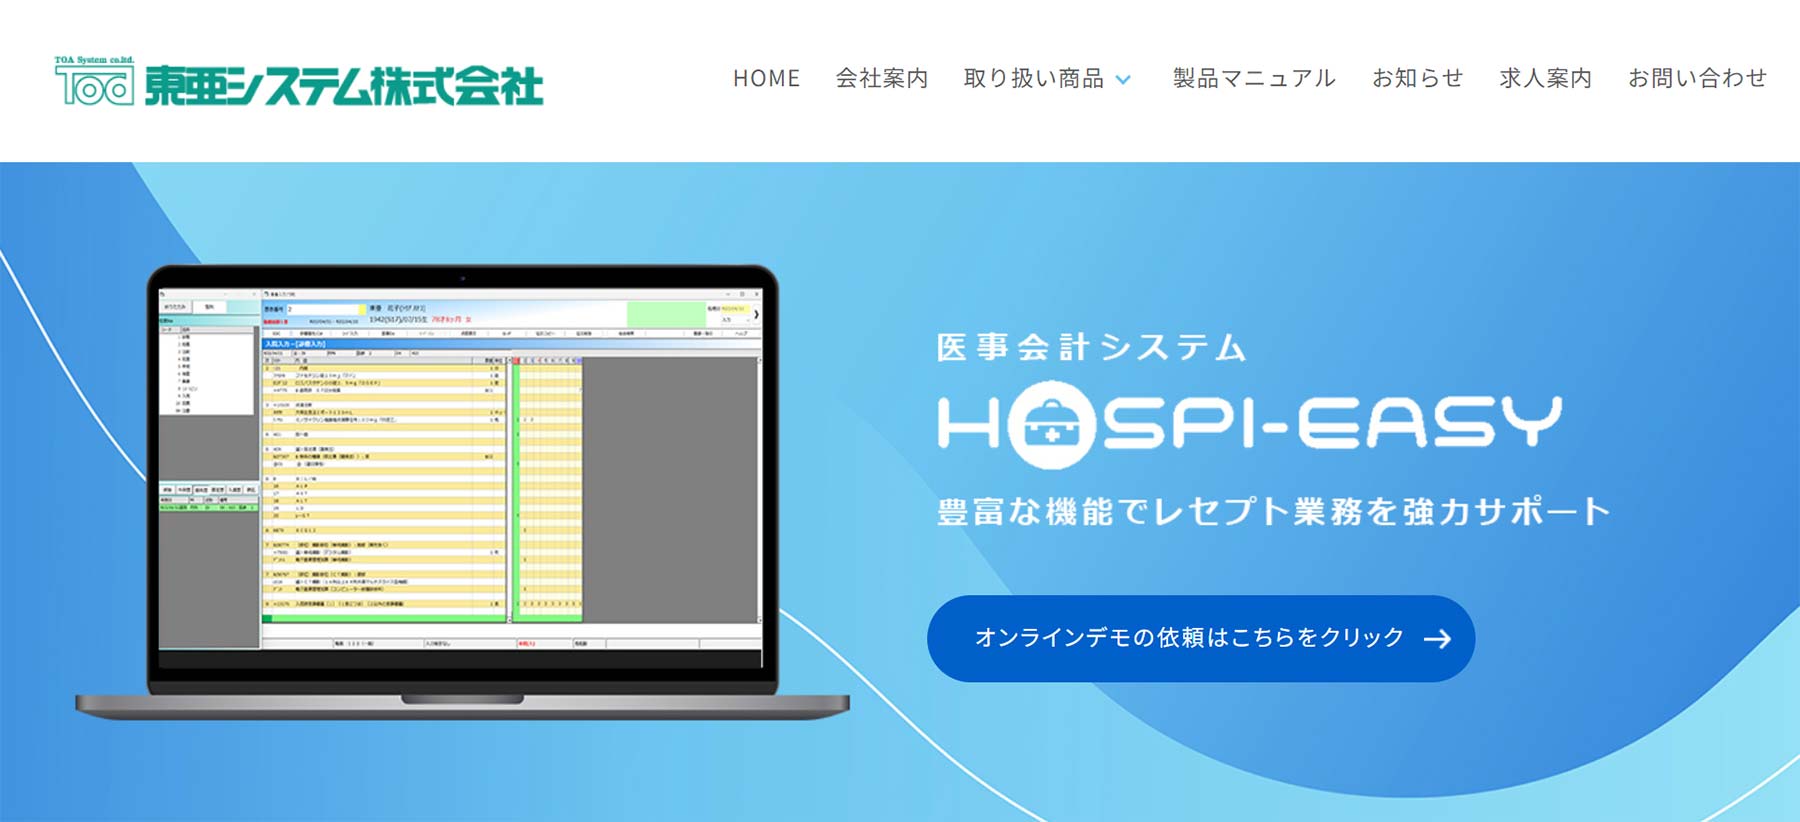 HOSPI EASY公式Webサイト